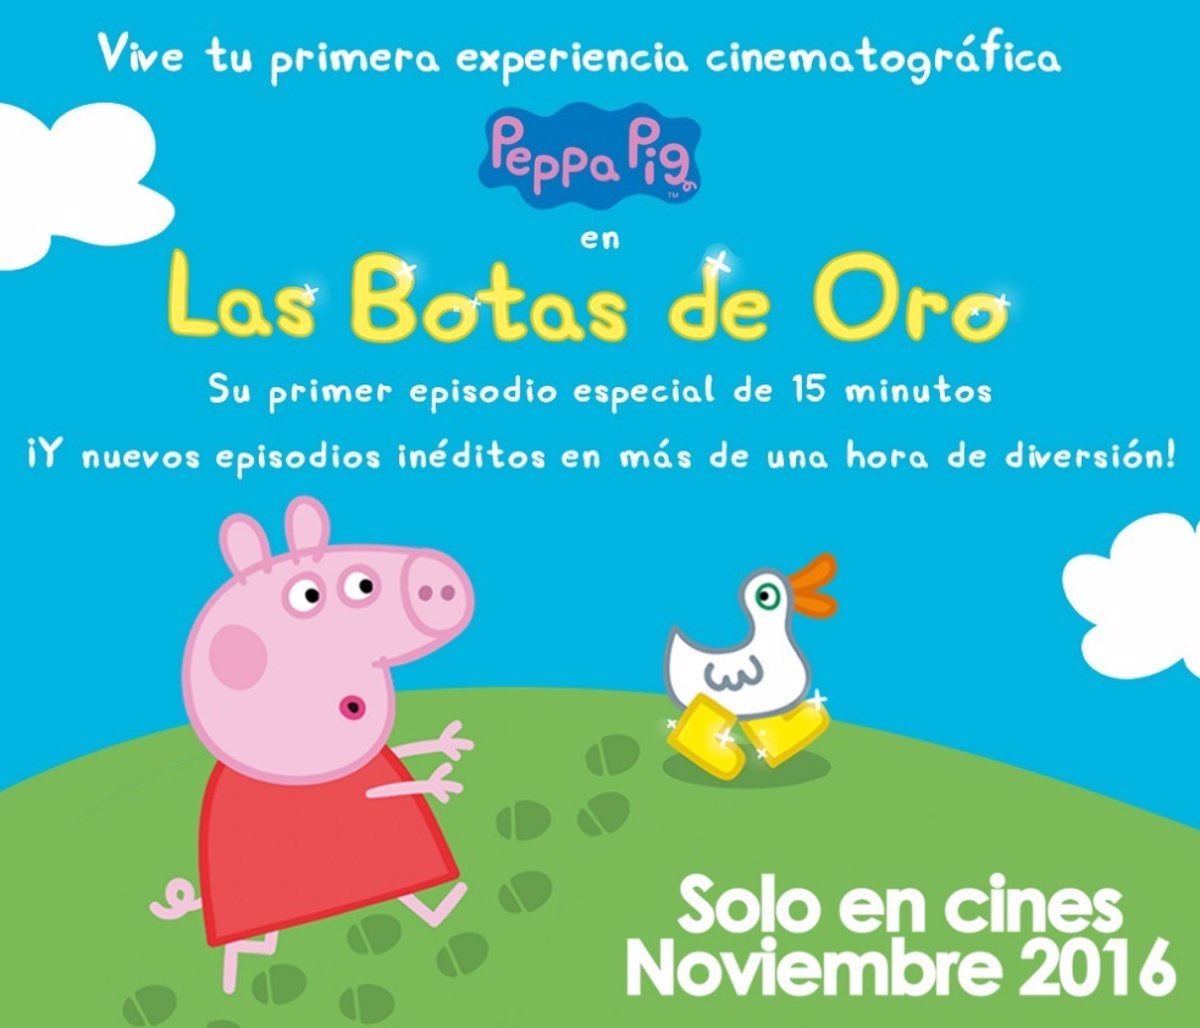 libro de texto Poderoso Chillido Peppa Pig salta al cine el cine el 12 de noviembre con 'Las botas de oro'